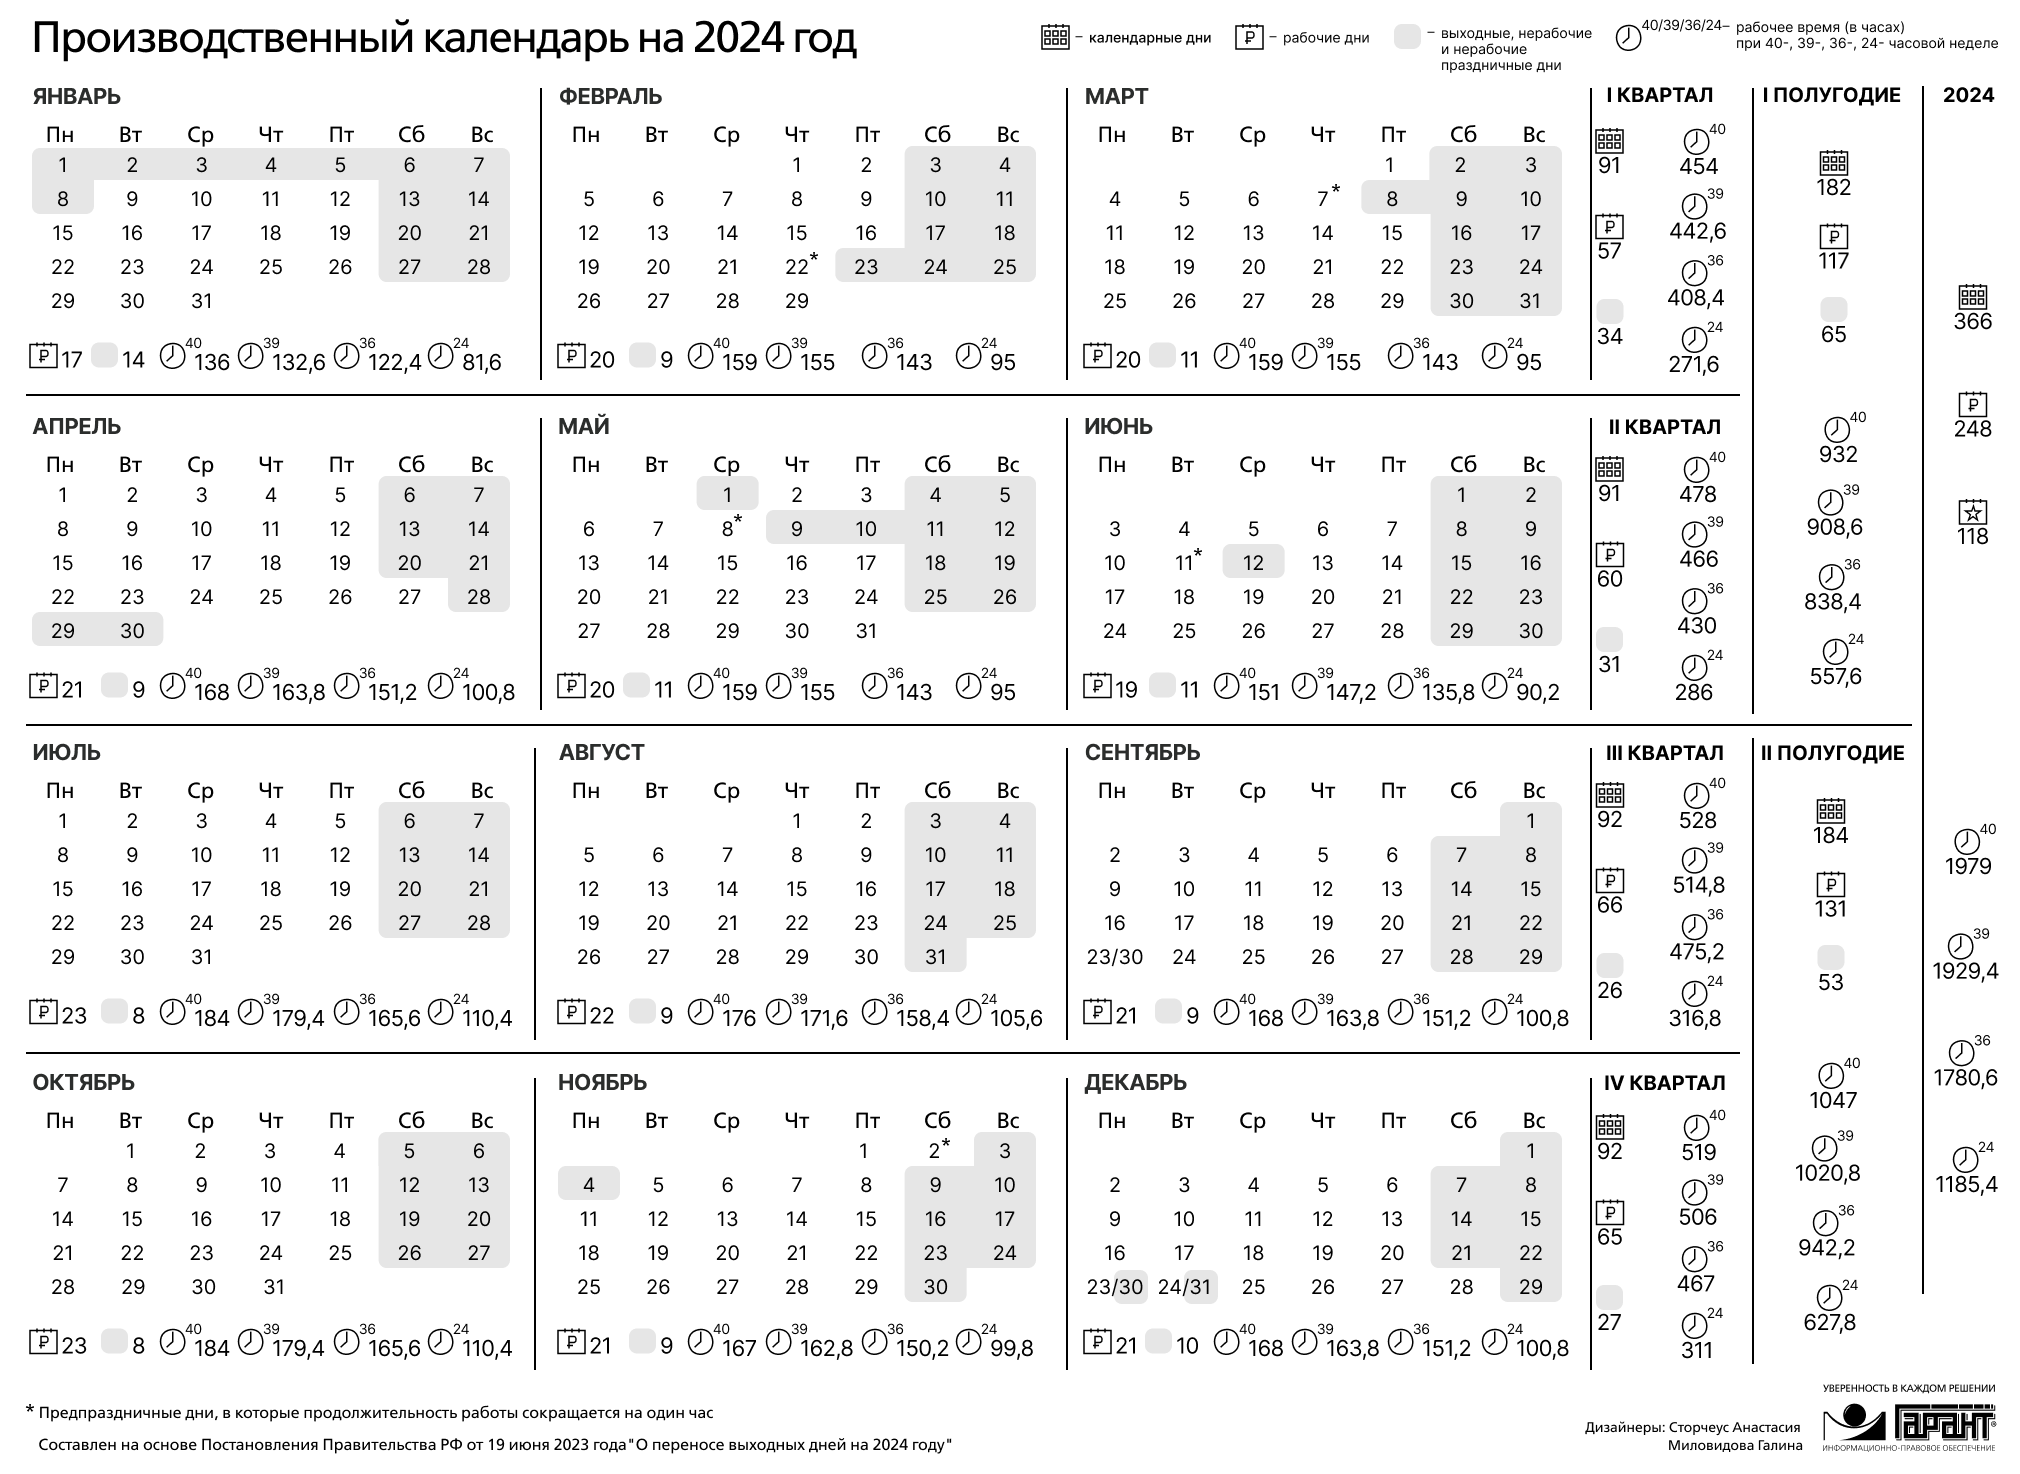 Праздничный календарь 2024 россия. Праздничные дни 2024 года в России производственный календарь. Календарь на 2024 год с праздниками и выходными производственный РФ. Производственный календарь на 2024 го од. Зводственный календарь на 2024.